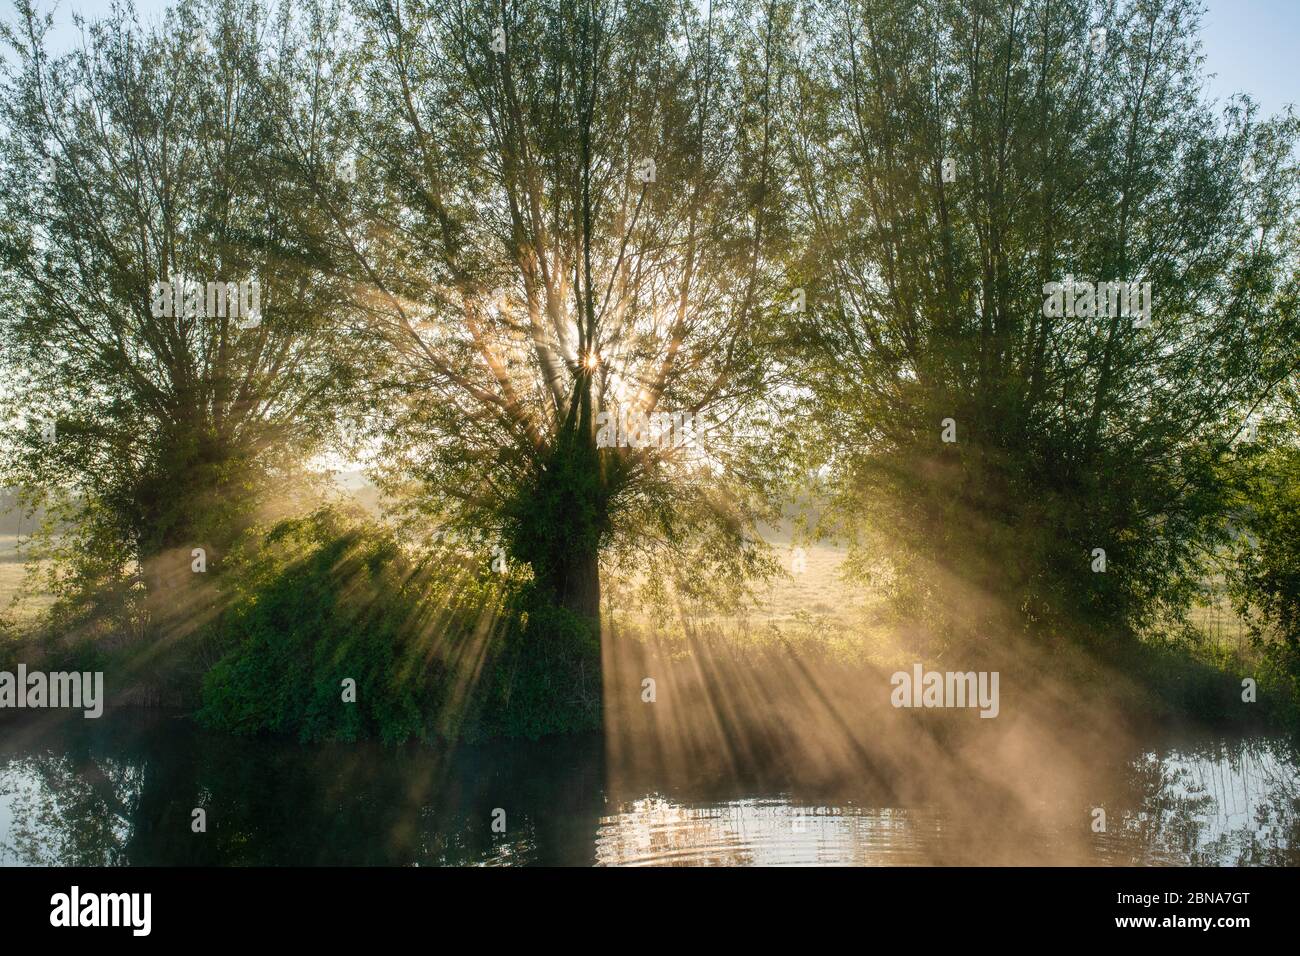 Le soleil traverse la brume et les saules le long du canal d'oxford. Près de Somerton, Oxfordshire, Angleterre Banque D'Images